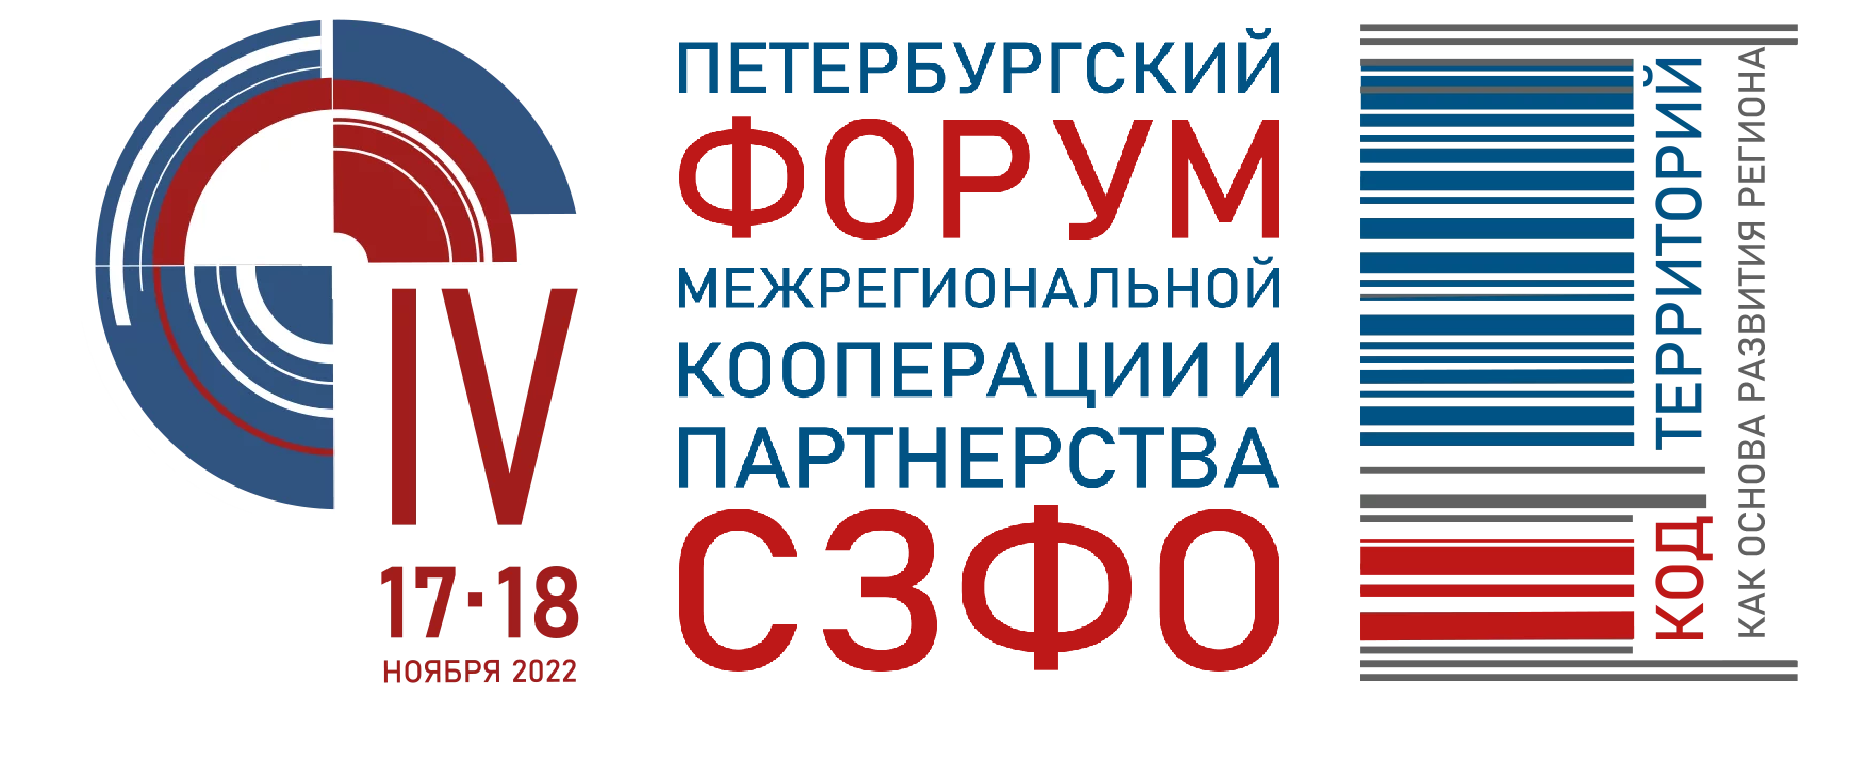 2022-11-17-18 - Петербургский форум межрегиональной кооперации и партнерства СЗФО